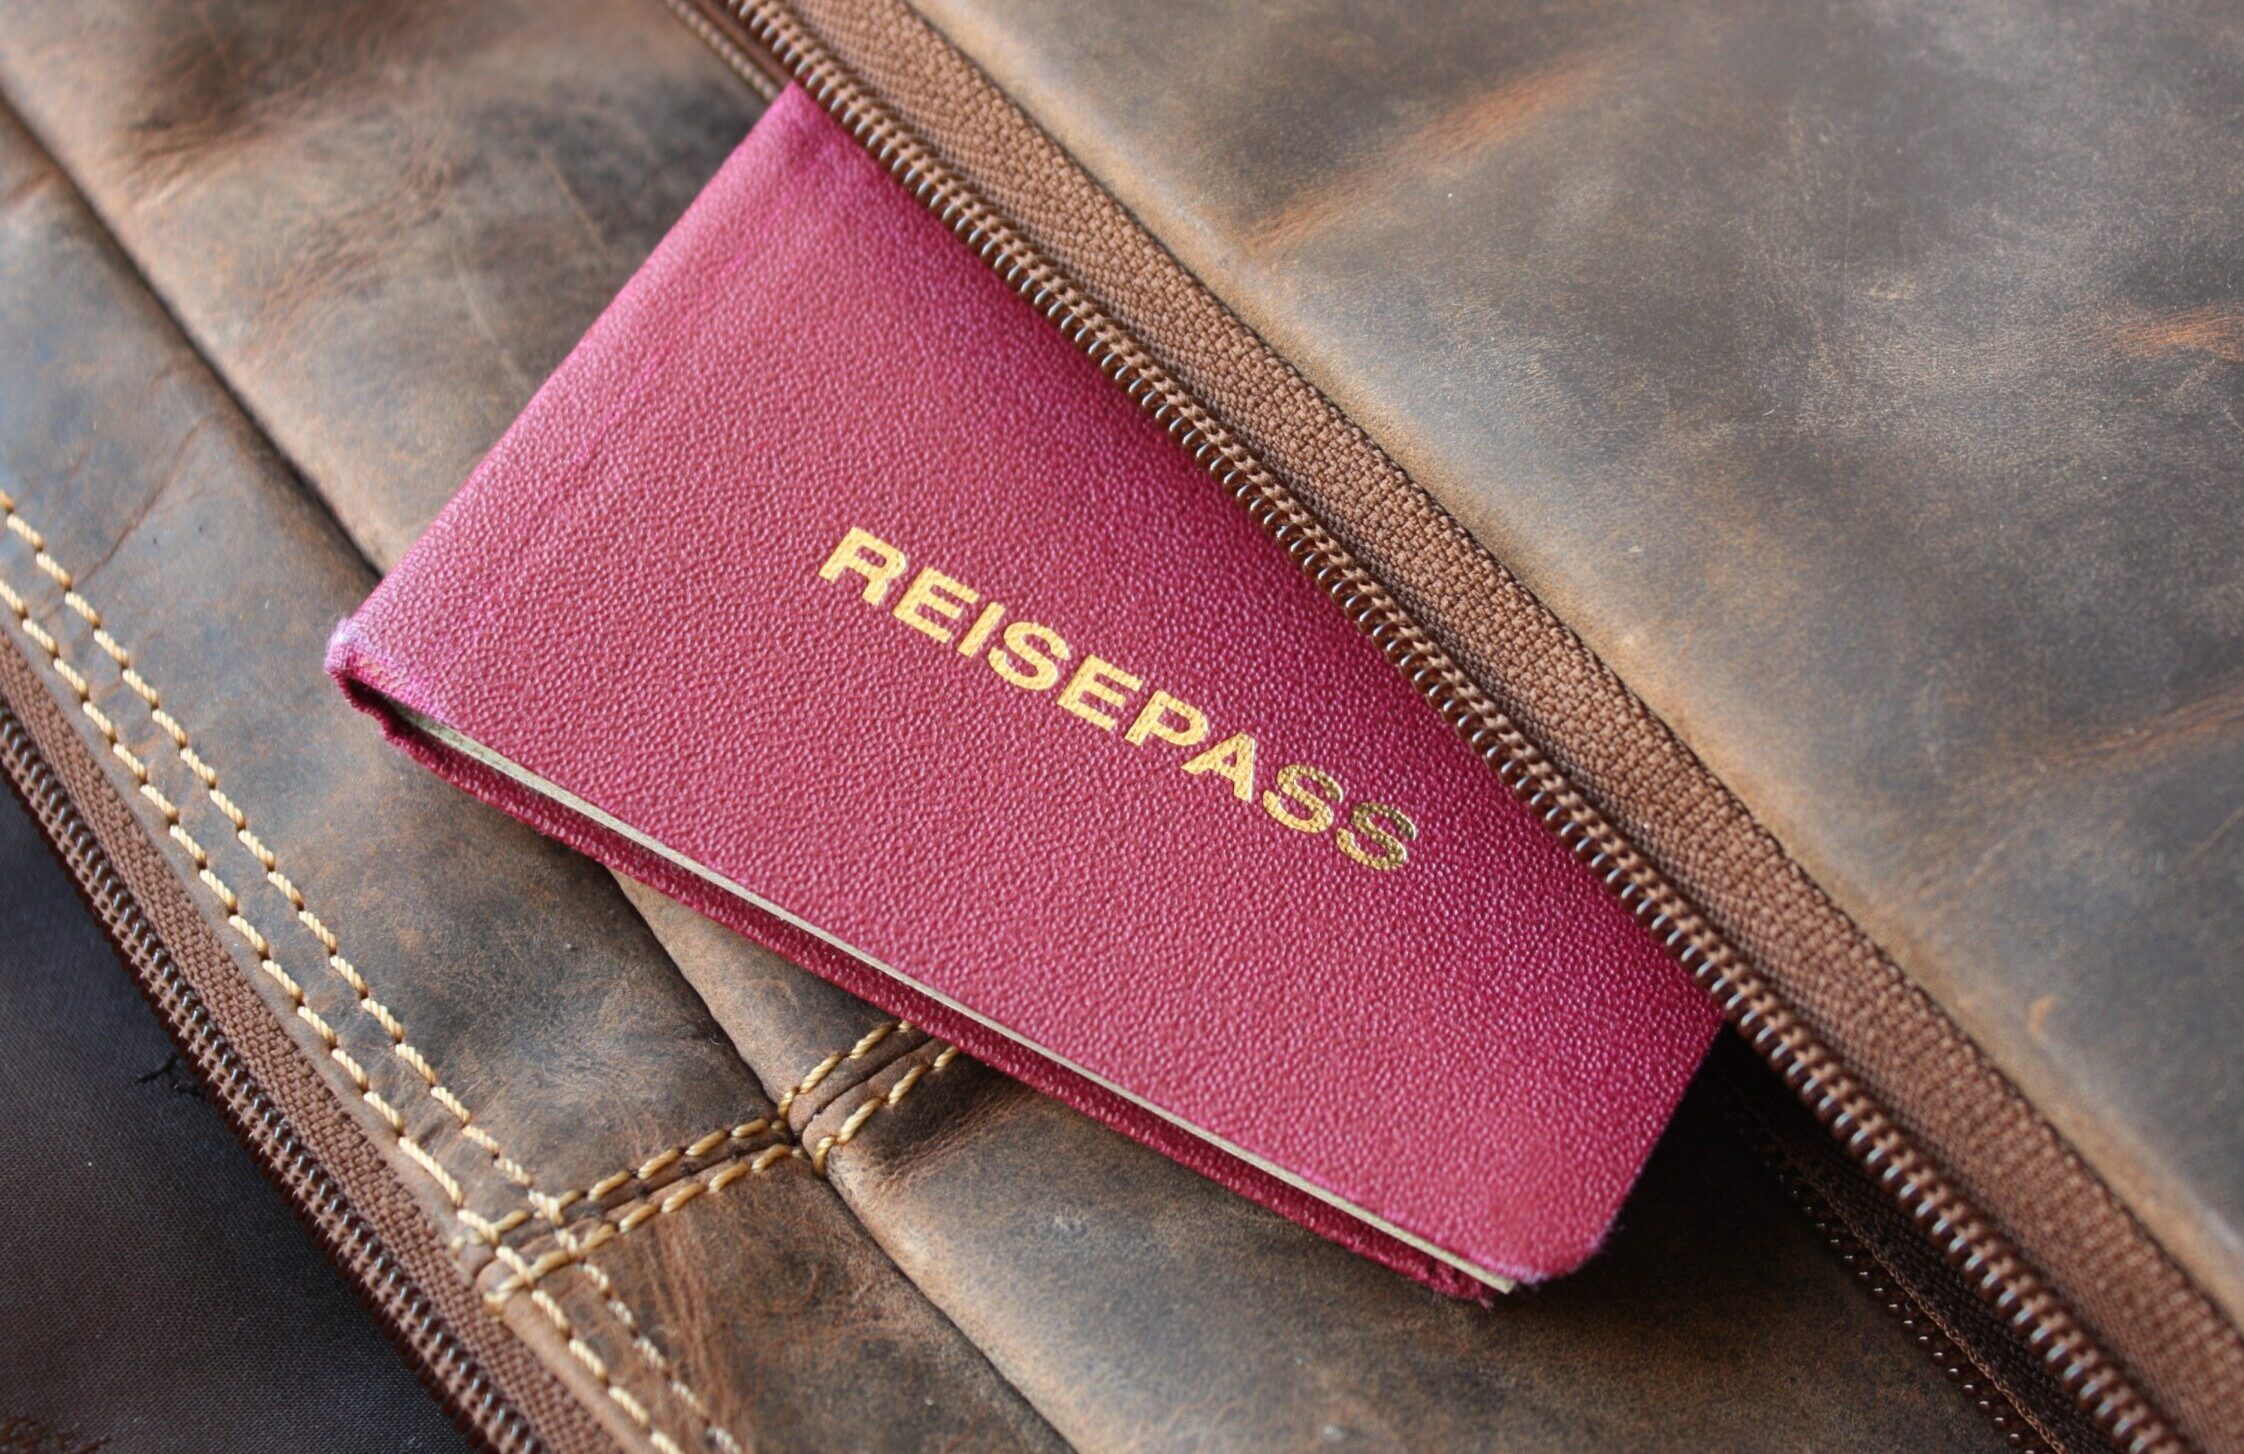 Ein Reisepass guckt aus einer braunen Ledertasche heraus. Das Wort "Reisepass" ist zu lesen.